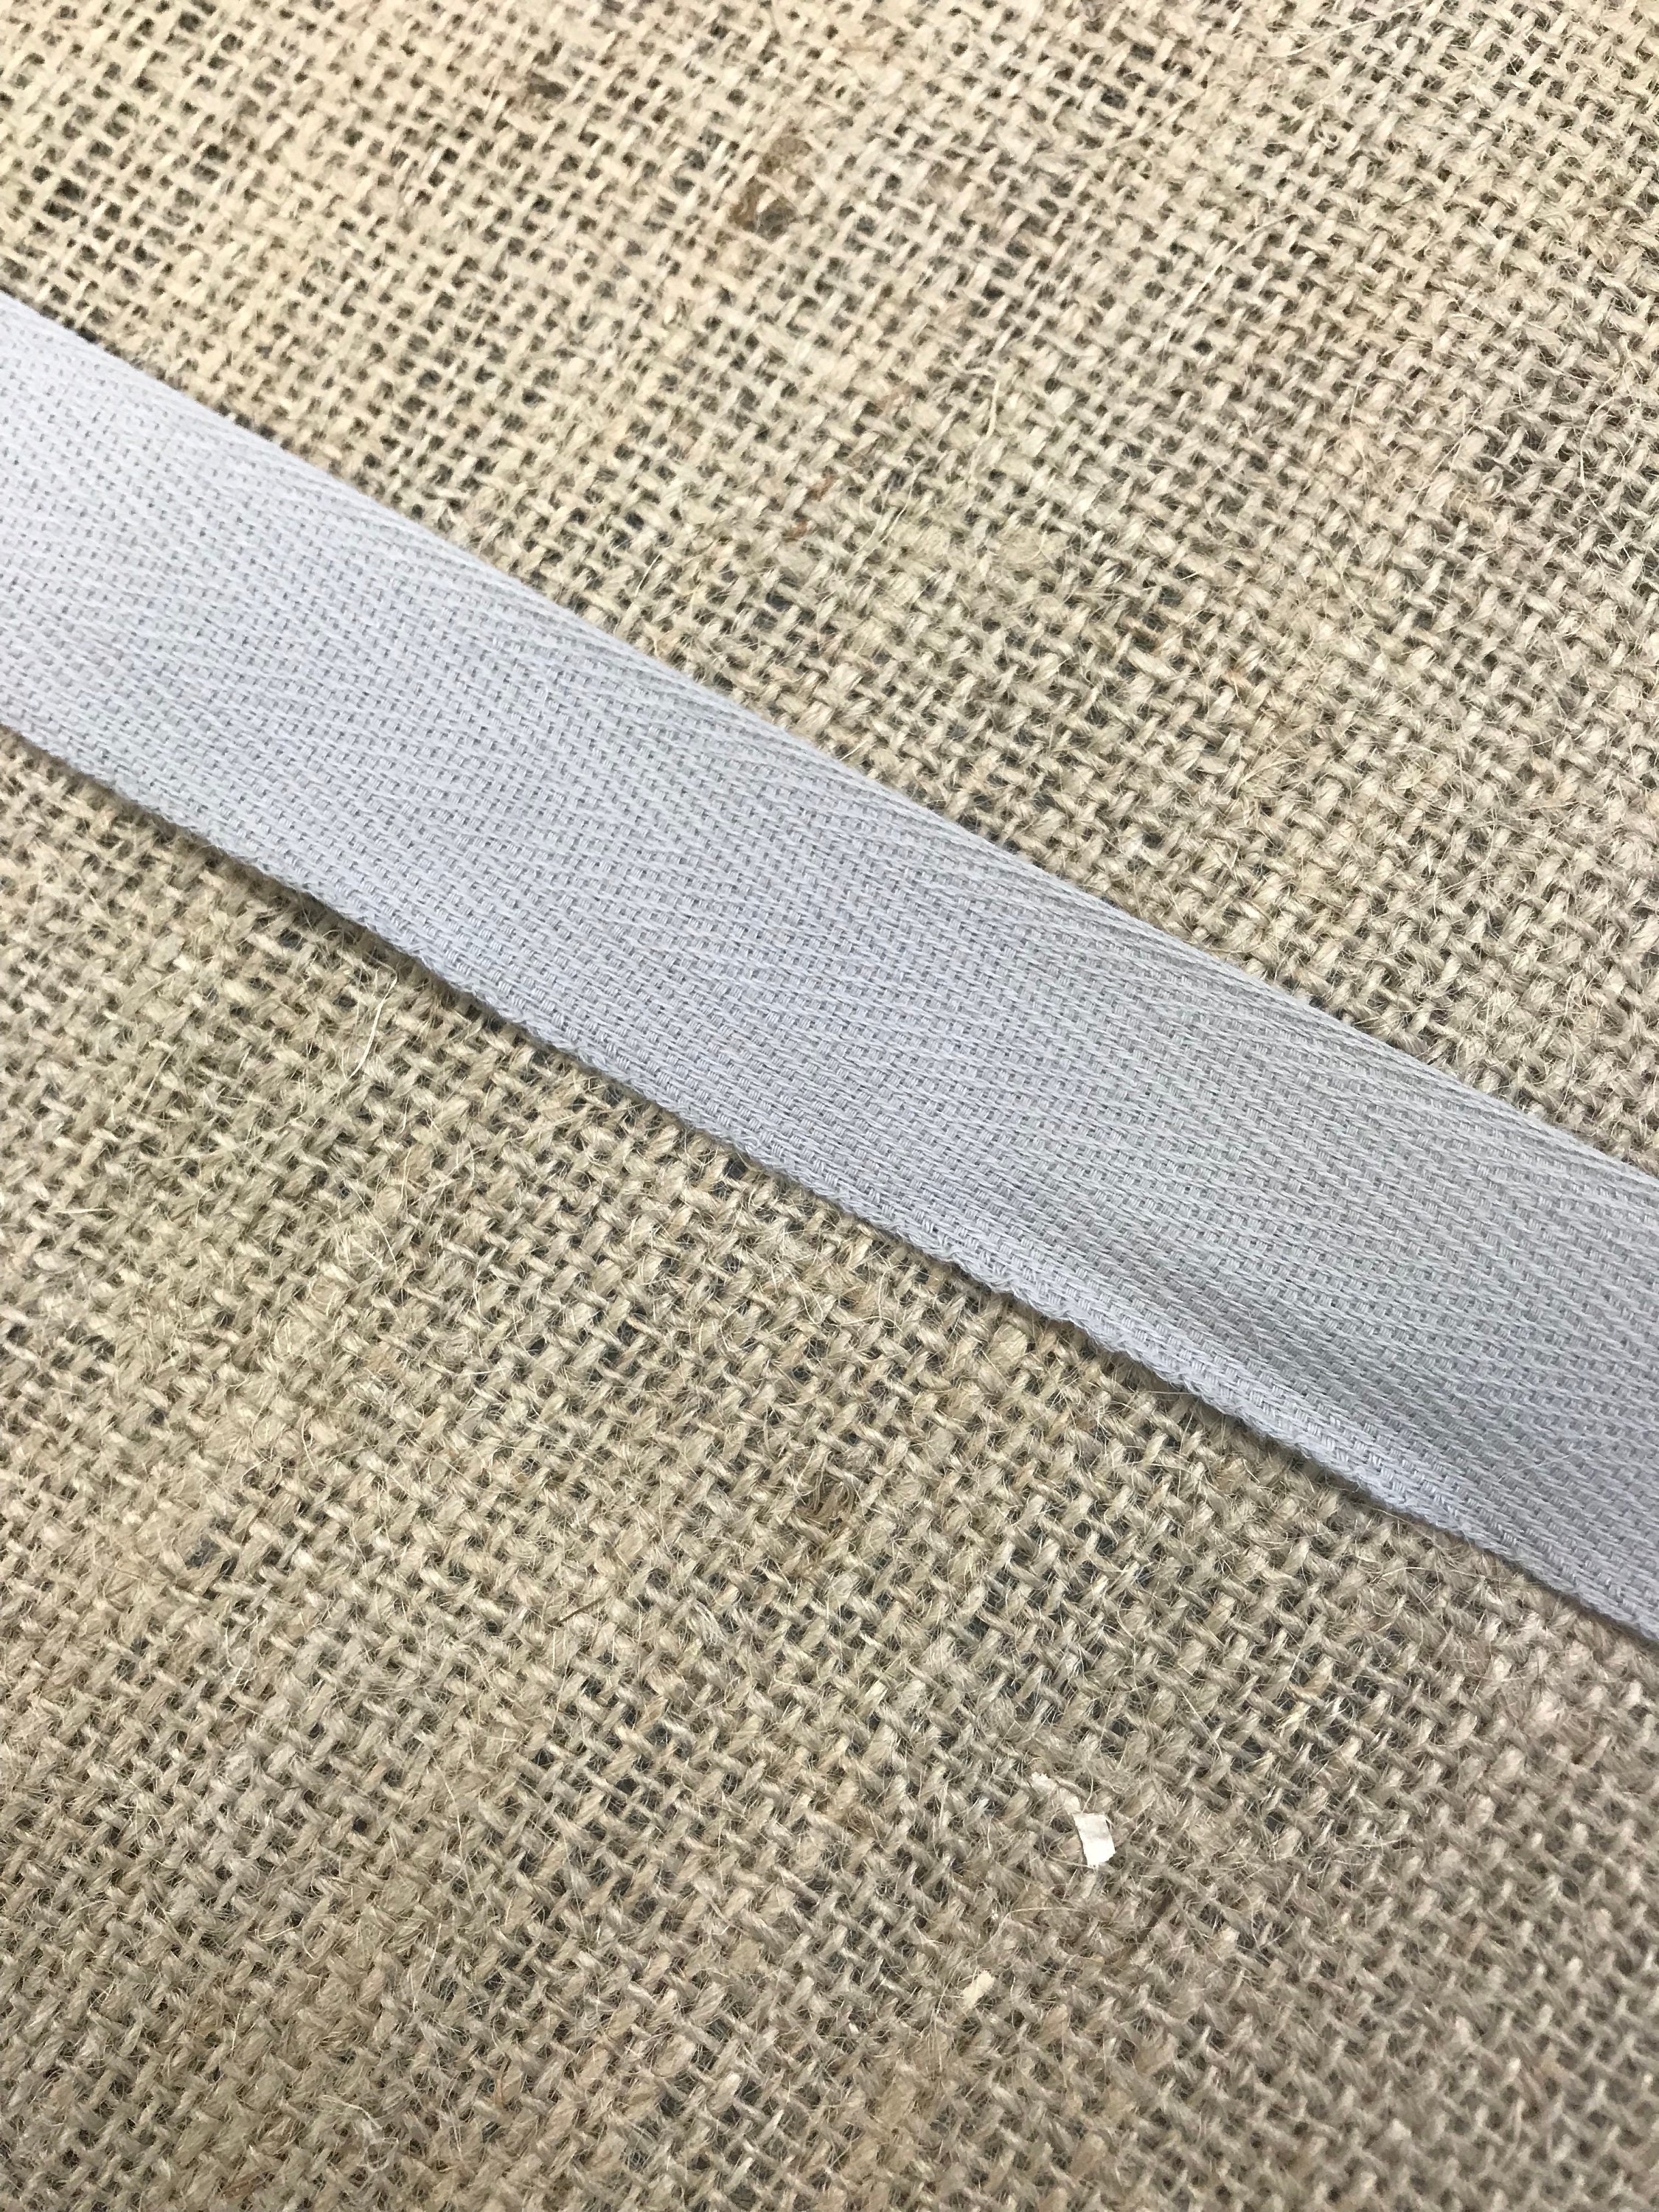 Regular Carpet Binding - Instabind DIY Rug Edging Tape